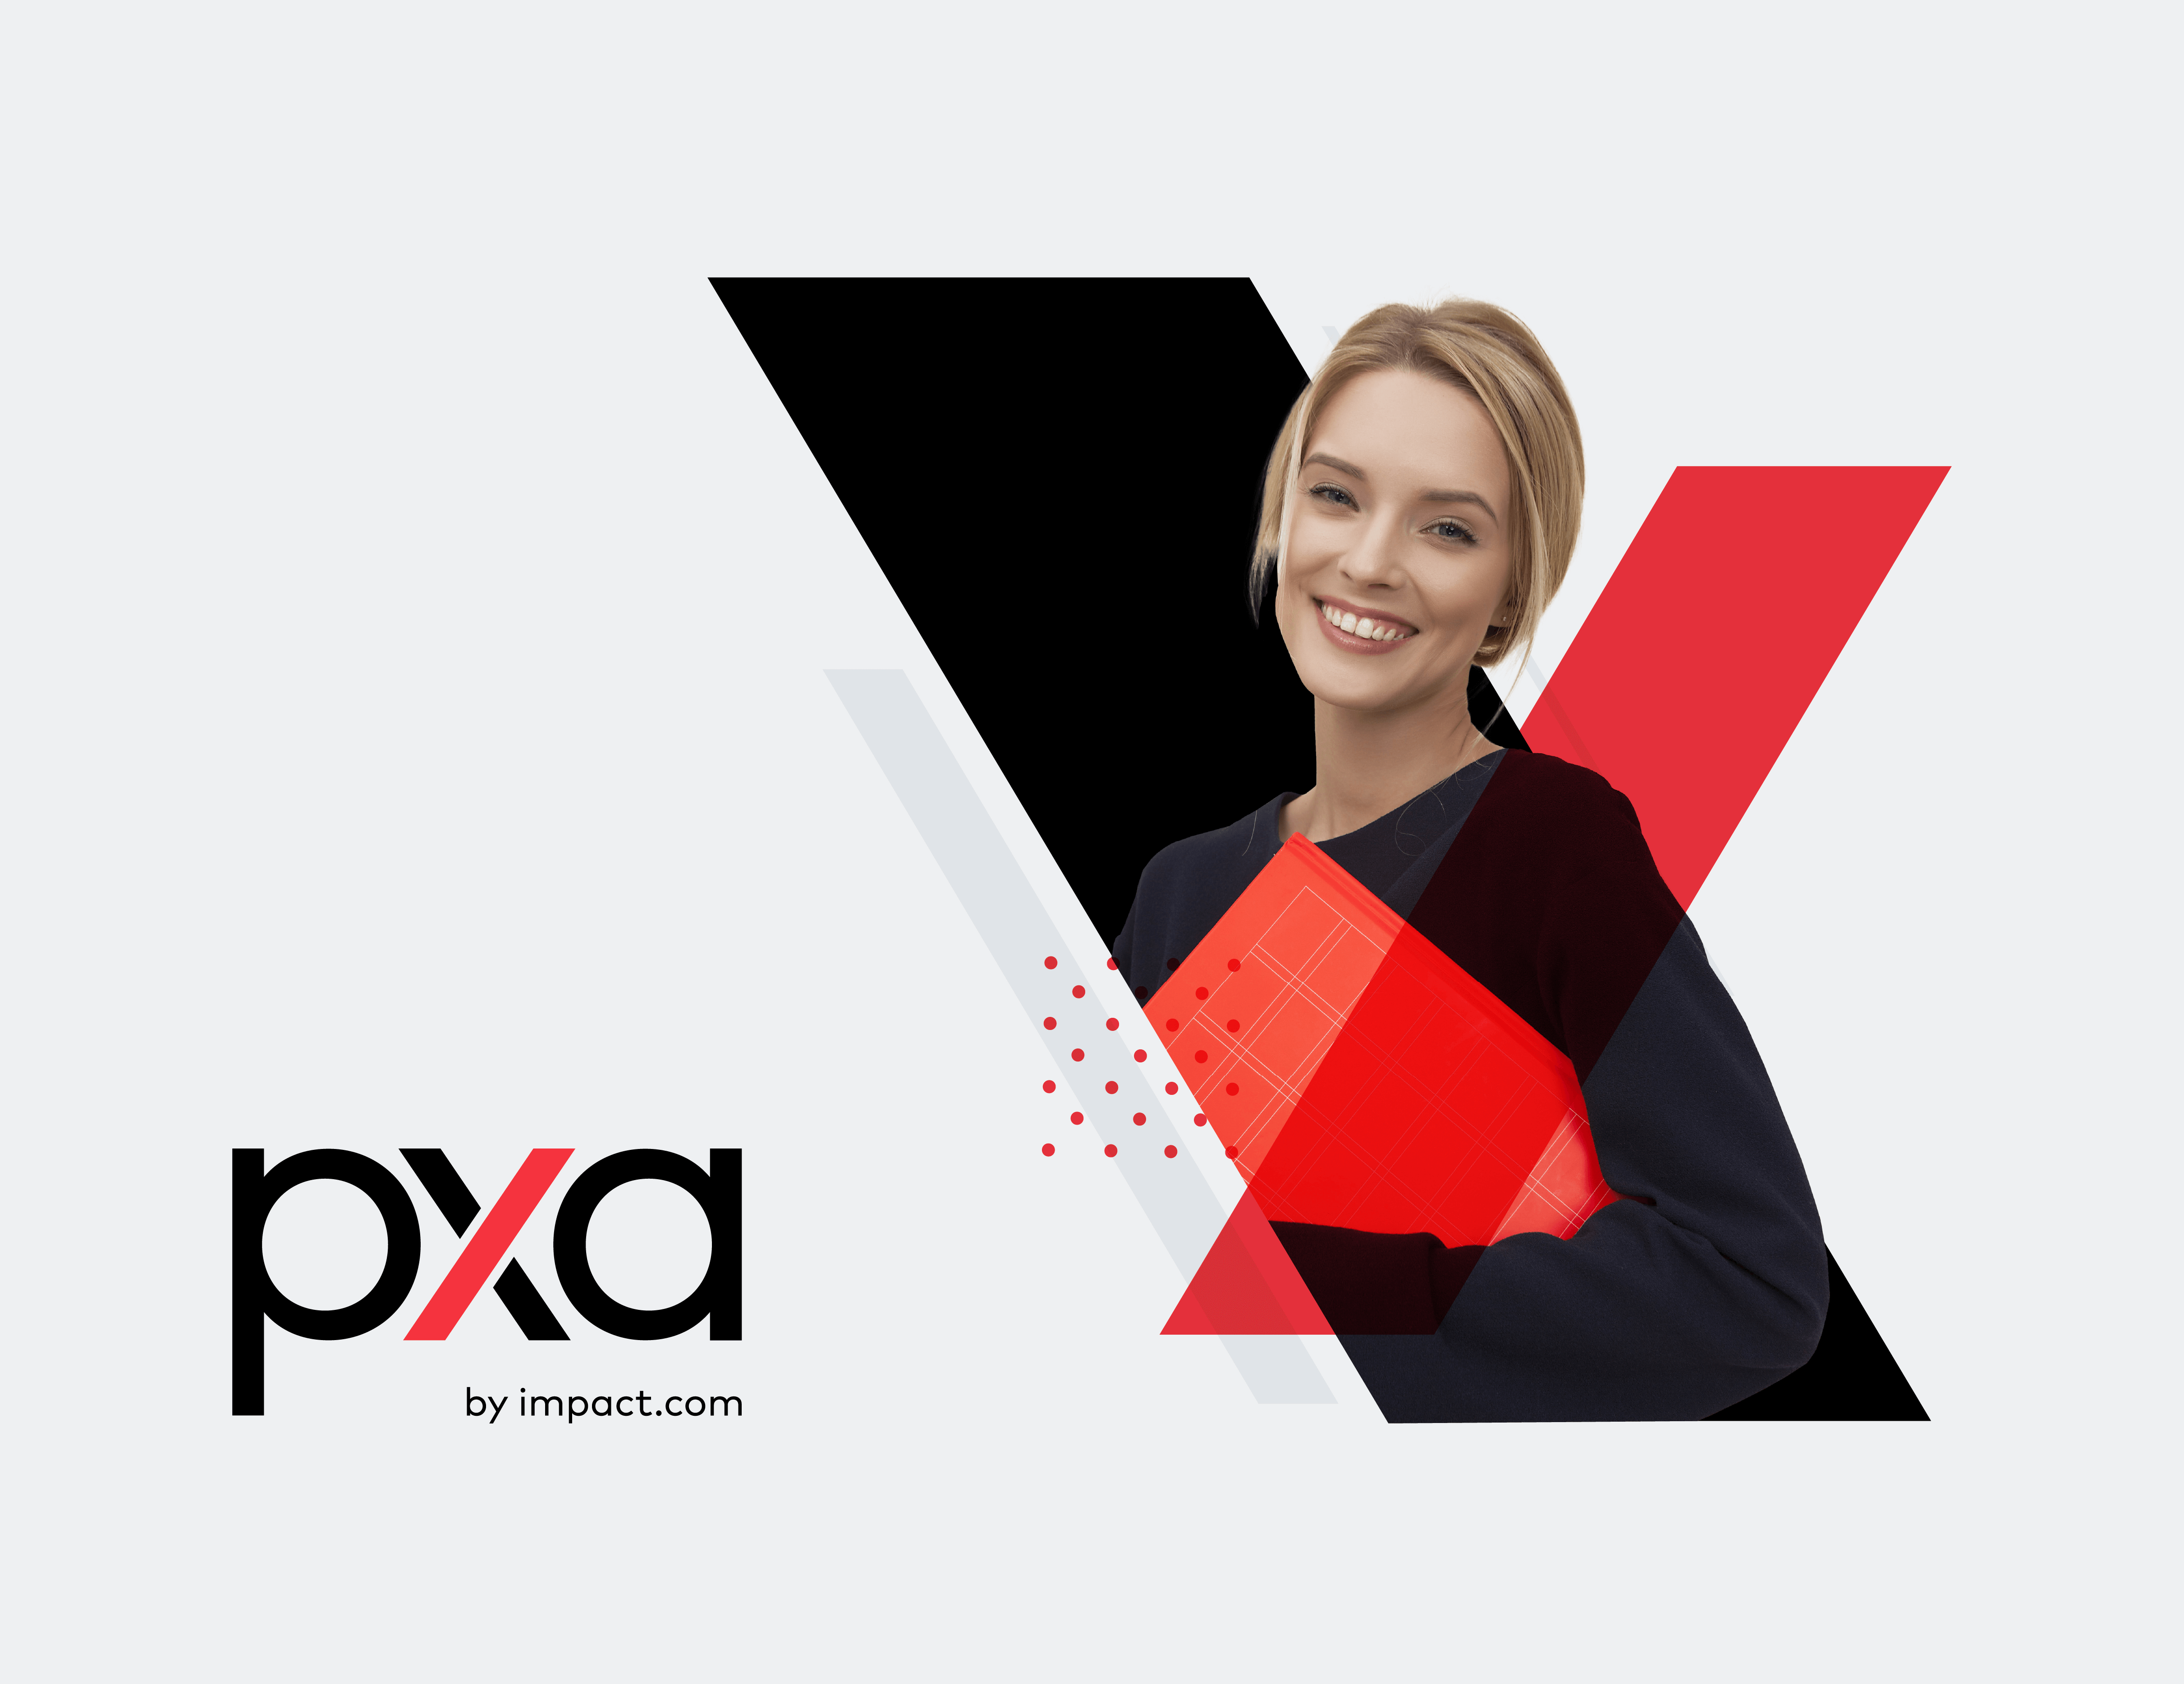 通过PXA – Impact.com获得新的职业和提高职业和提高您的技能91 / 作者: / 来源:Impact